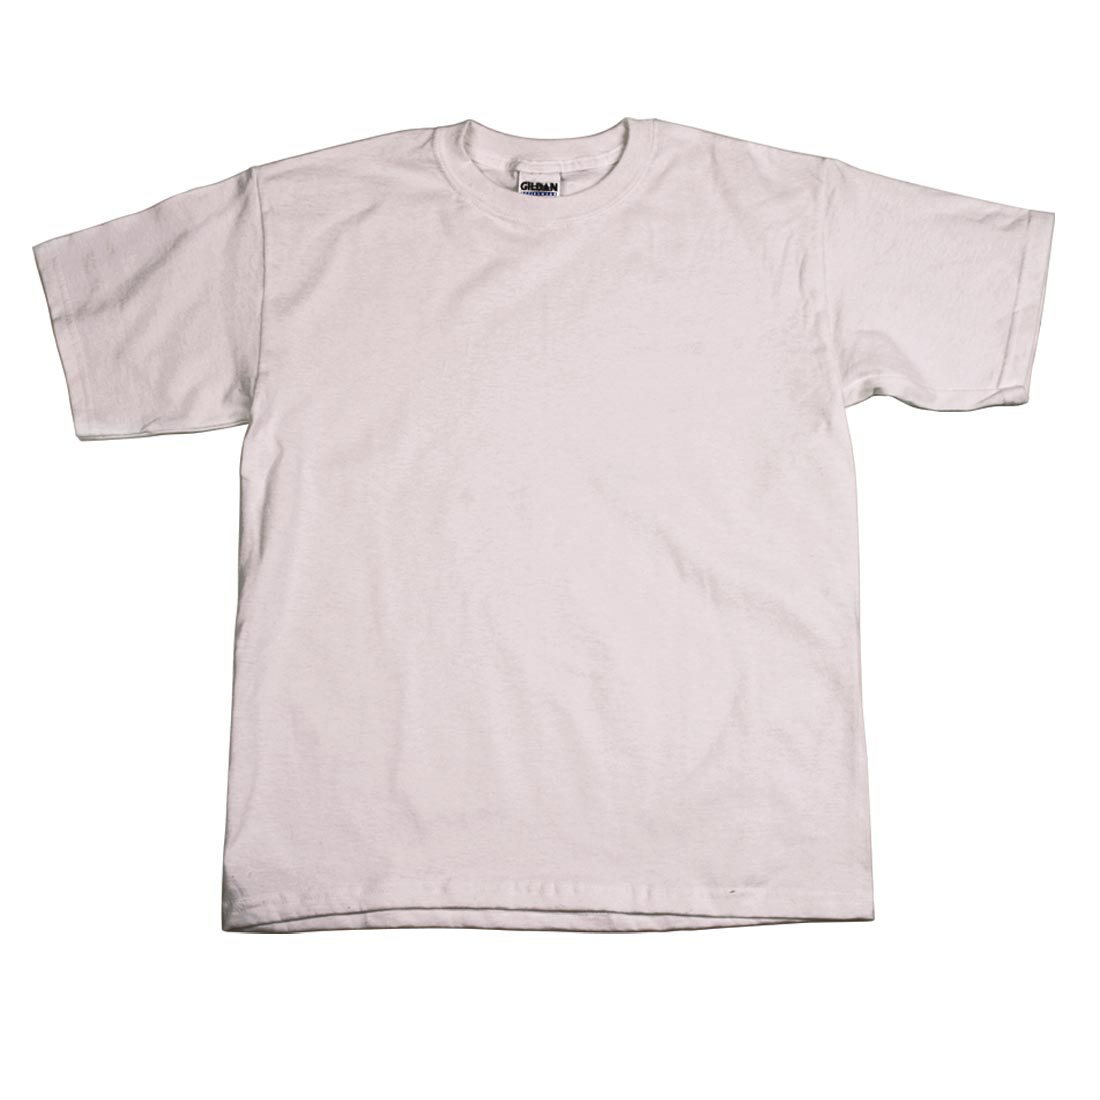 Youth Medium Plain White T-Shirt